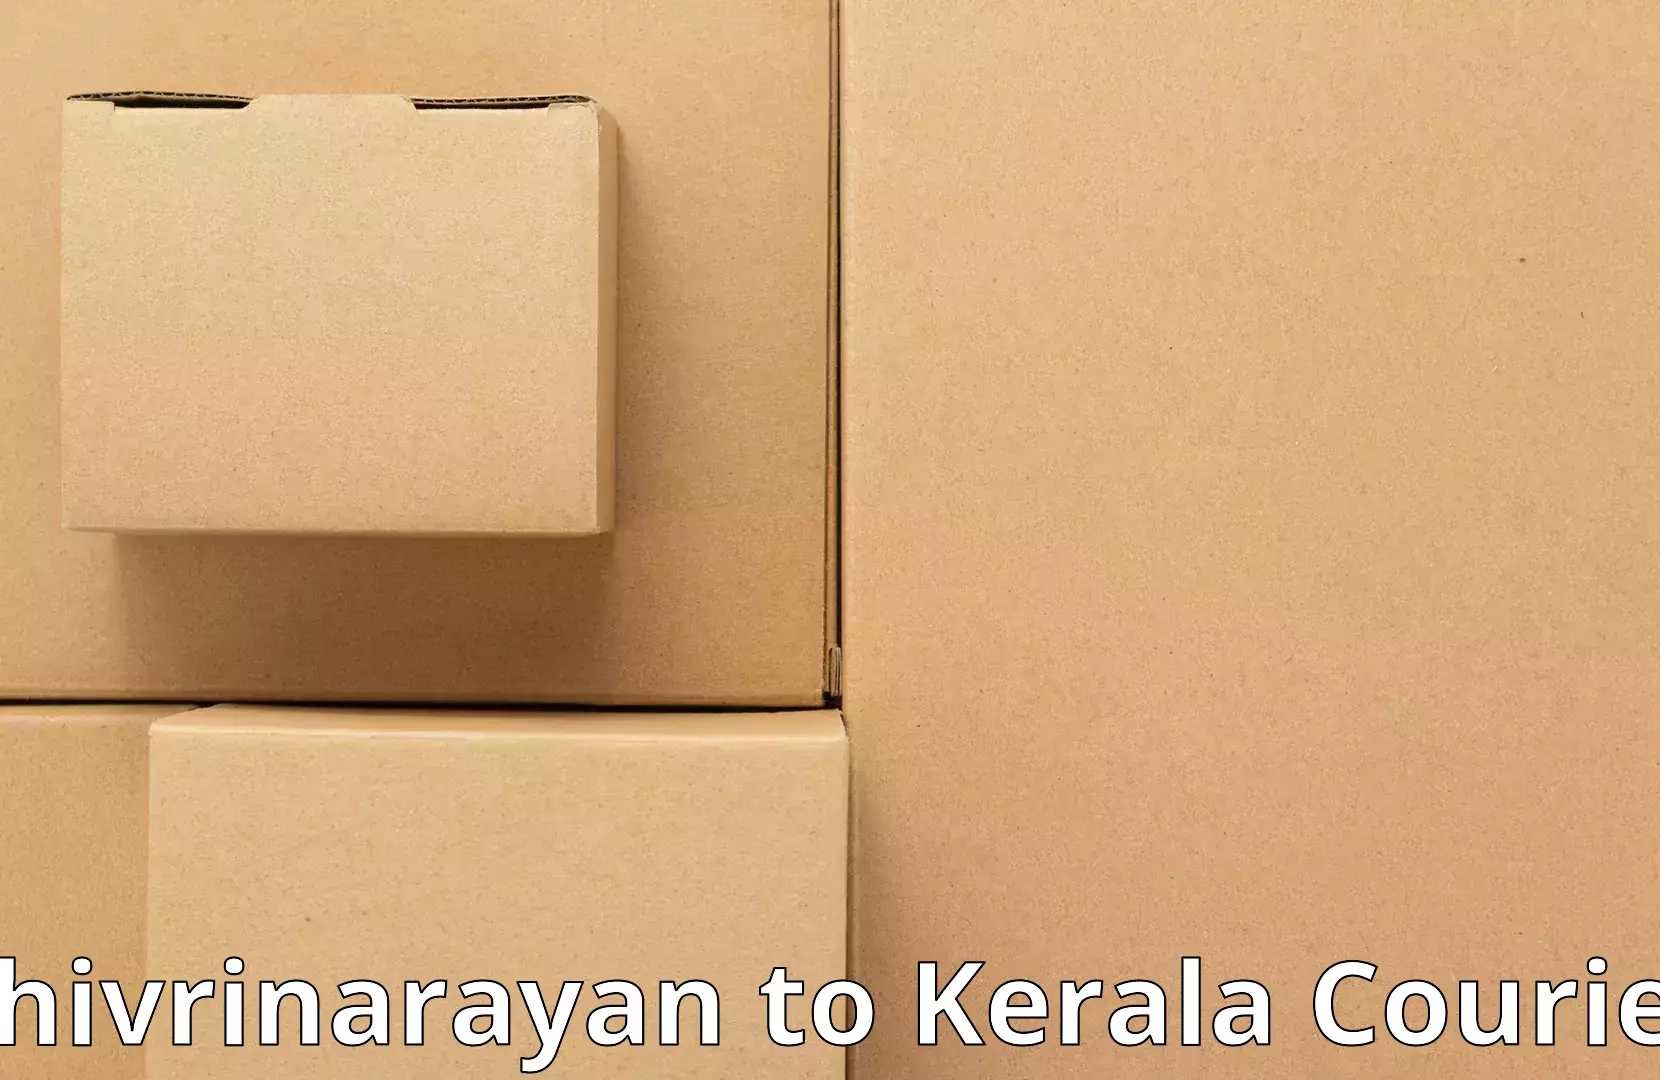 Furniture moving experts Shivrinarayan to Alathur Malabar